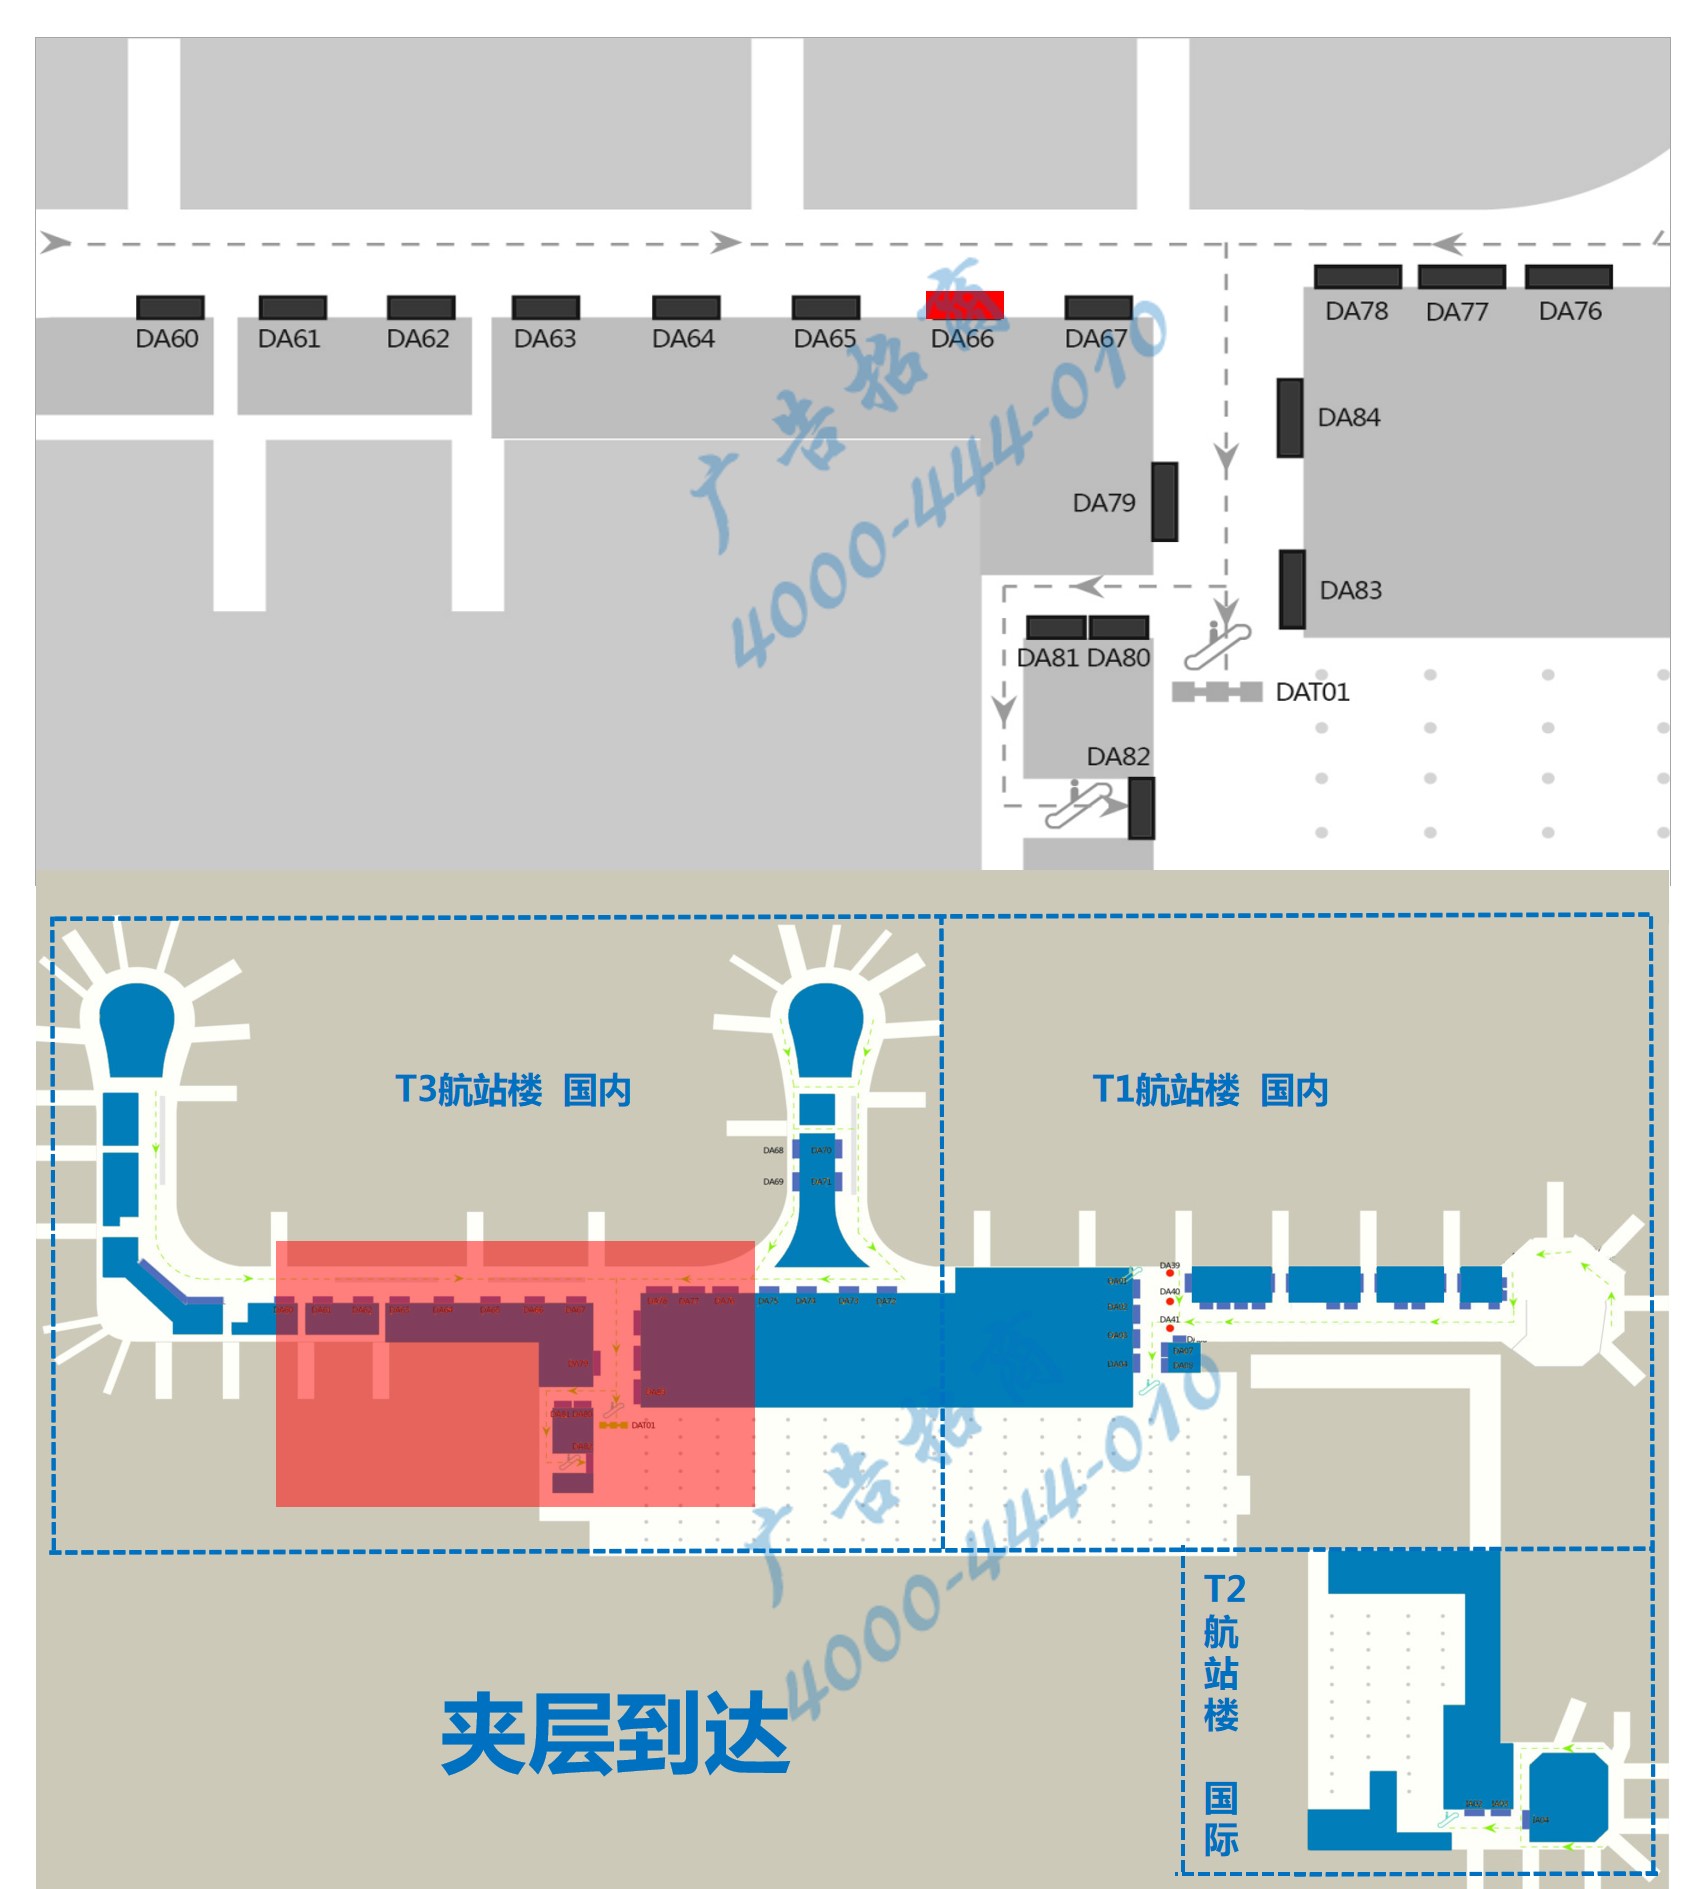 杭州萧山机场广告-T3到达通廊自动扶梯旁灯箱DA66位置图